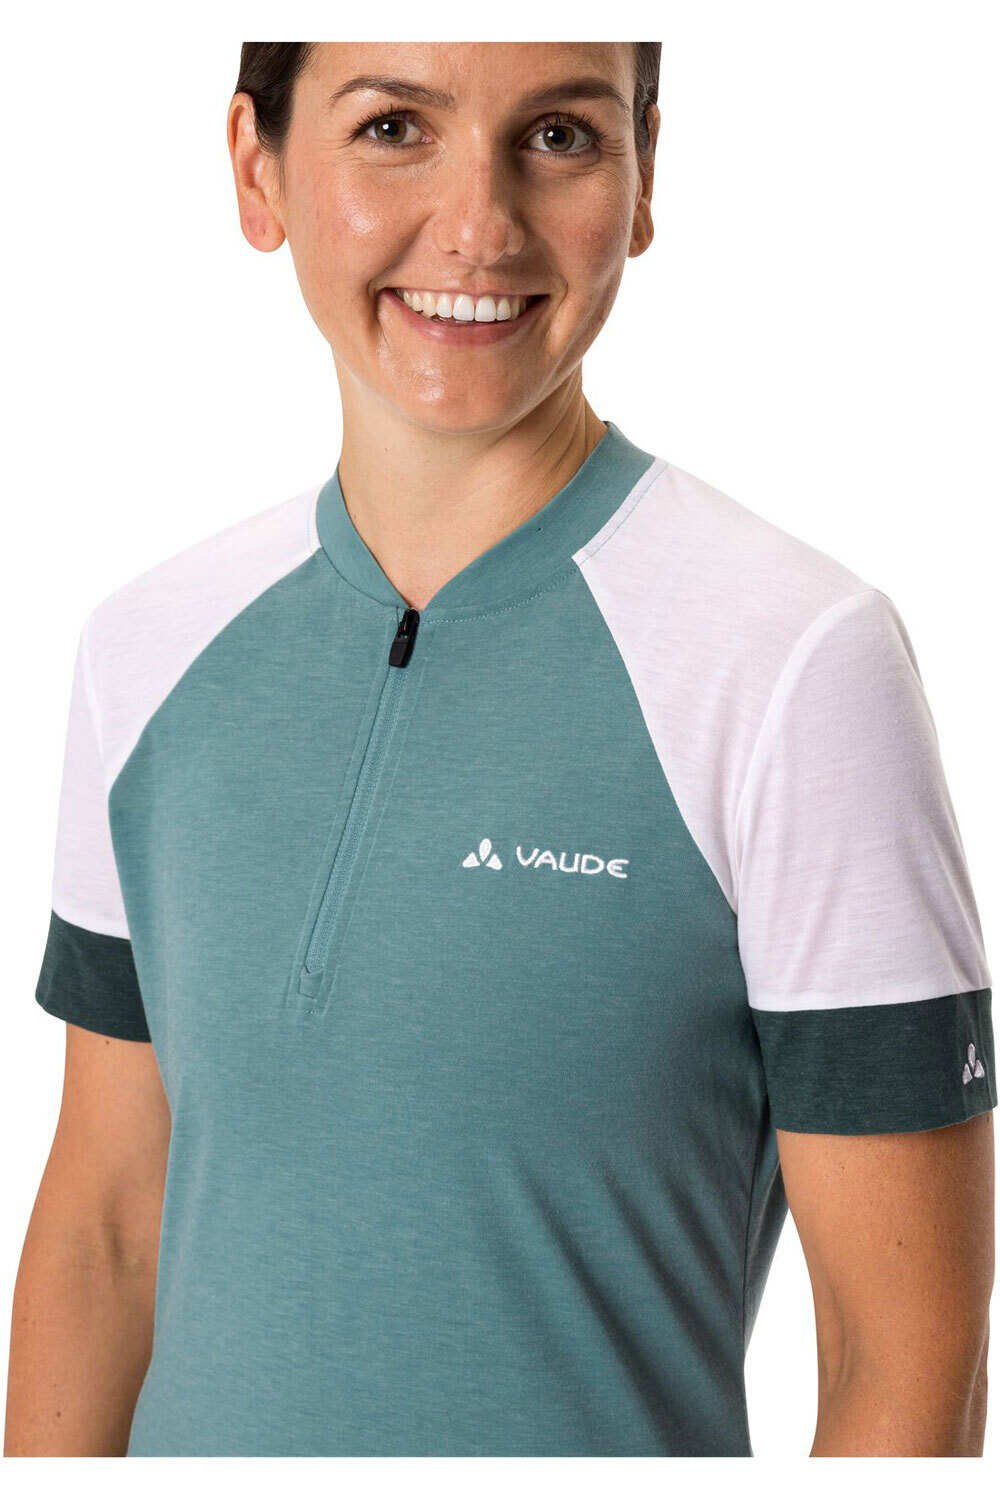 Vaude maillot manga corta mujer Women's Altissimo Q-Zip Shirt vista detalle